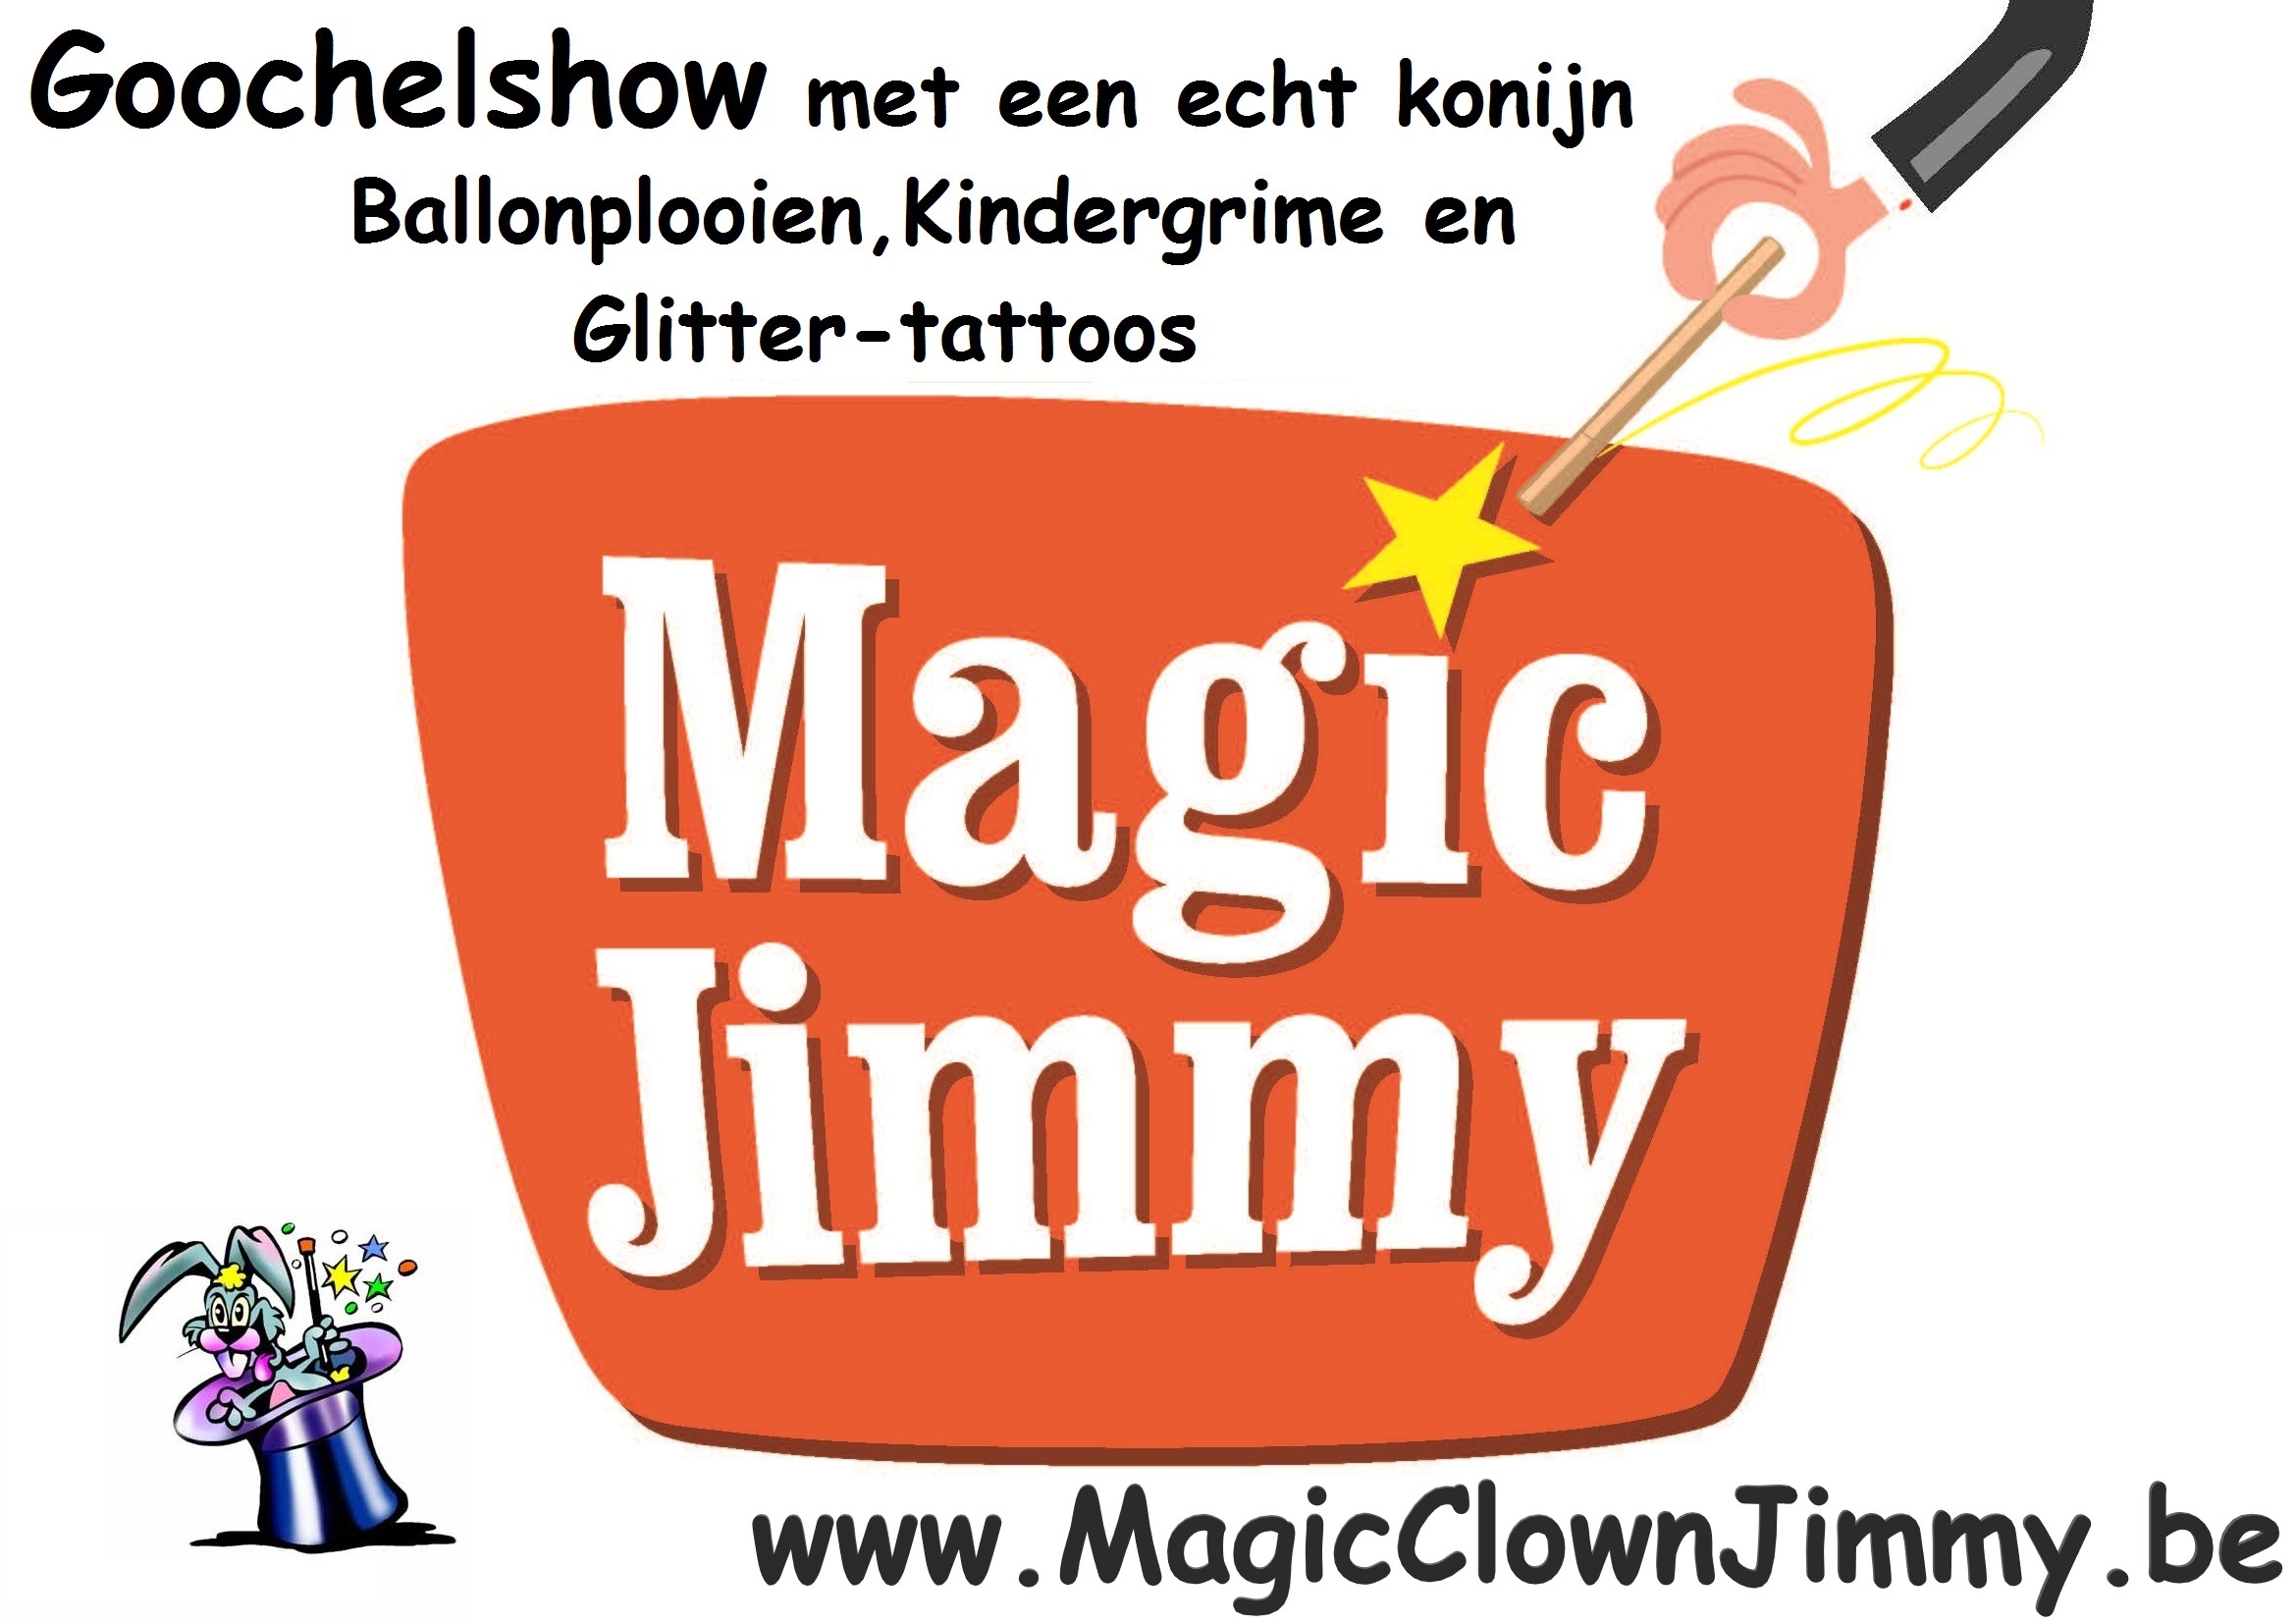 hierbij ziet u het logo van Magic Clown Jimmy met de tekst Goochelshow met een echt konijn en witte duifjes, grappen als een clown, ballonplooien, Grime en Glitter-tattoos.